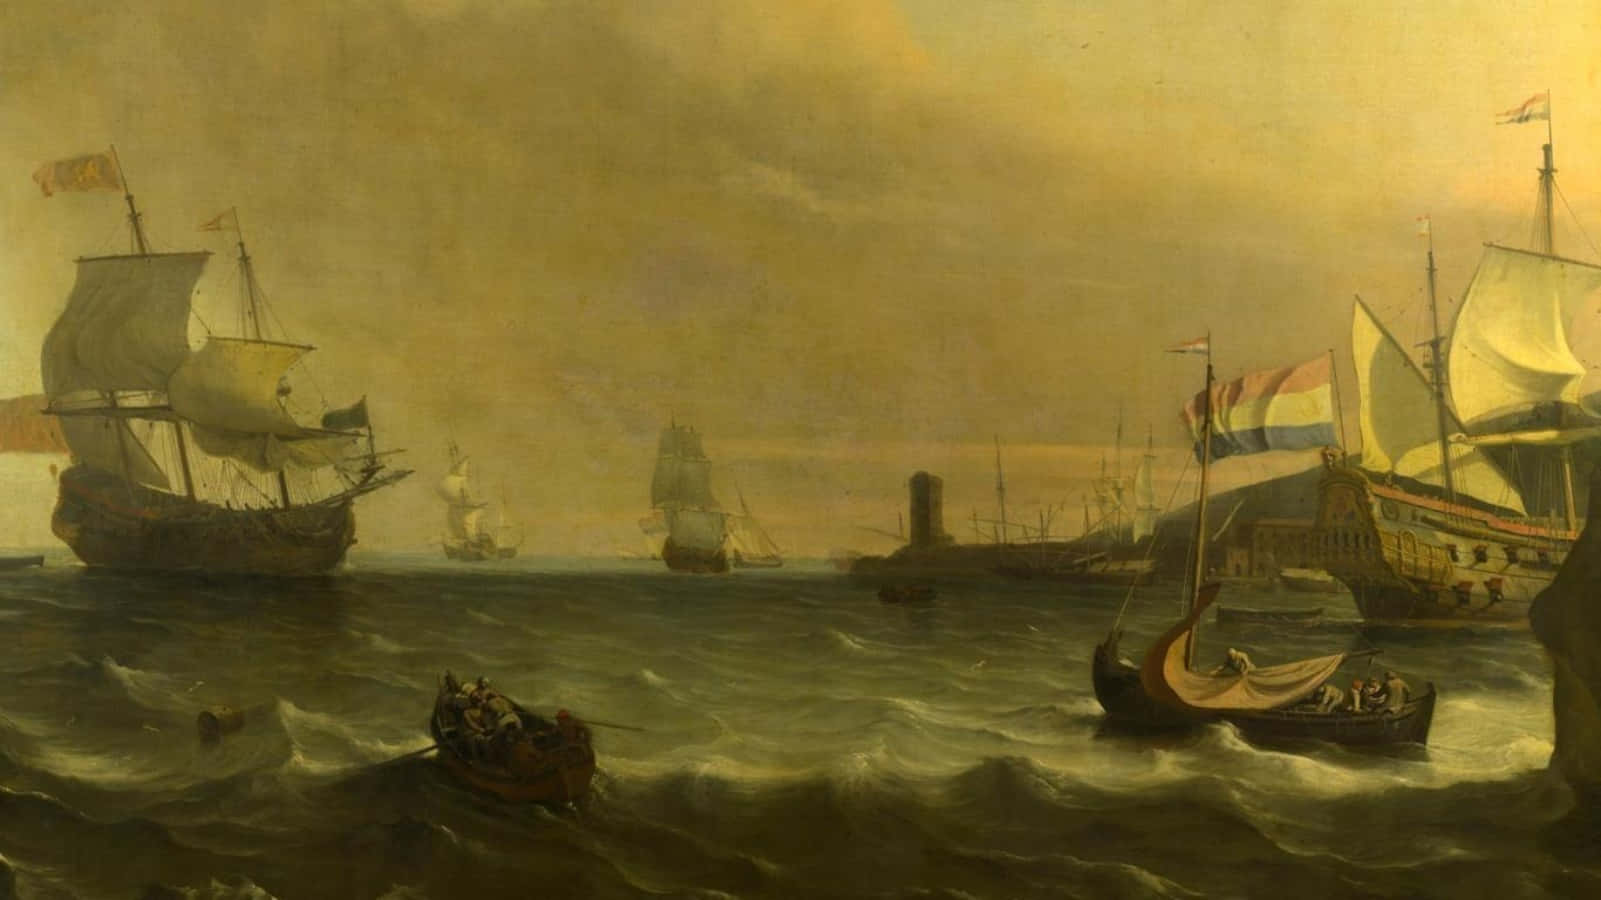 Eingemälde Von Schiffen Auf Dem Meer Wallpaper